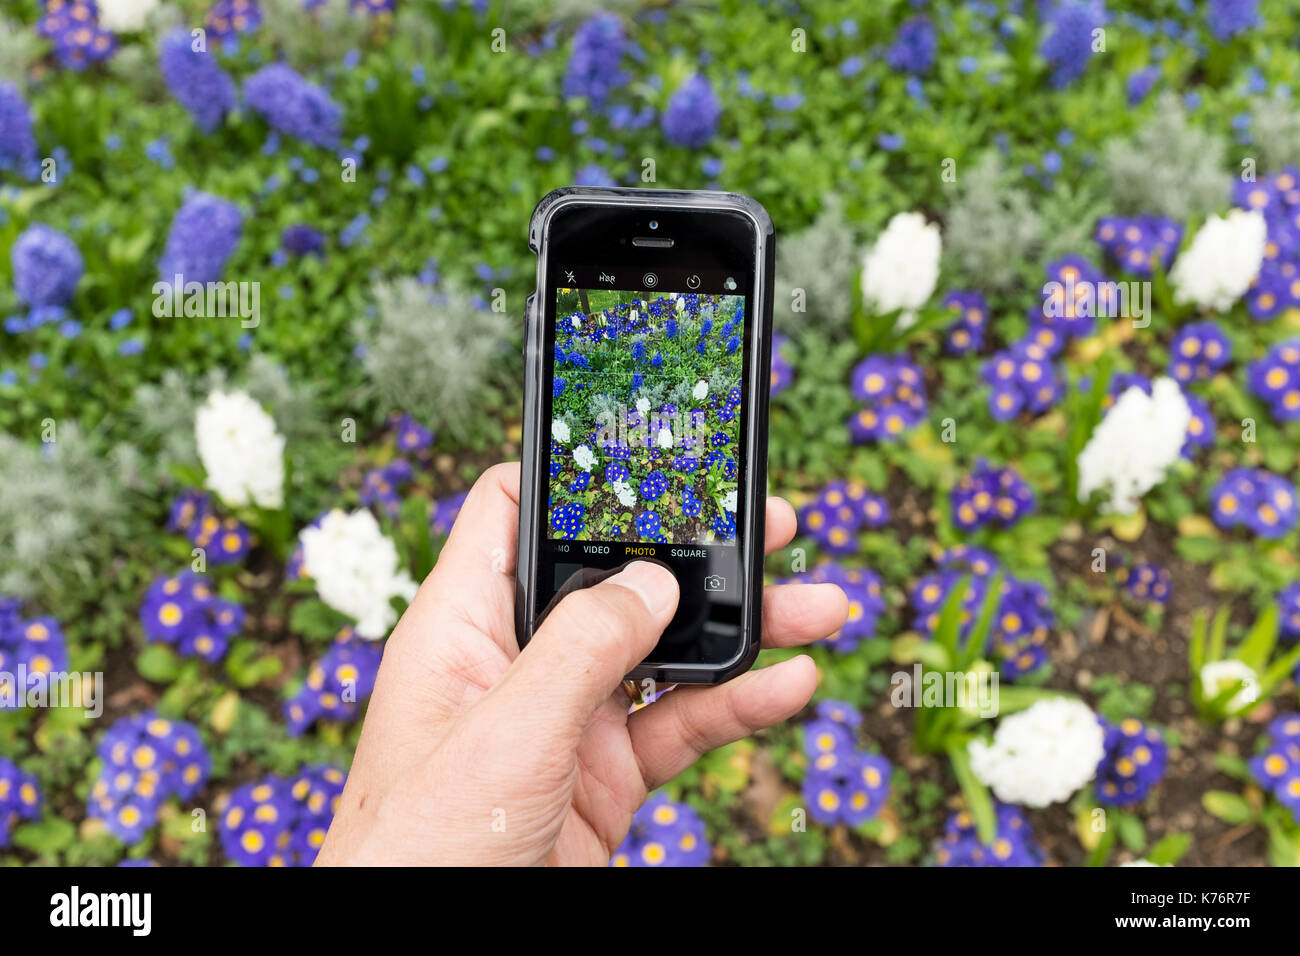 Un hombre toma de fotografía de Hyacynth (Asparagaceae, Scilloideae) y polyanthus (Crescendo tonos azules) con un iPhone smartphone SE Foto de stock